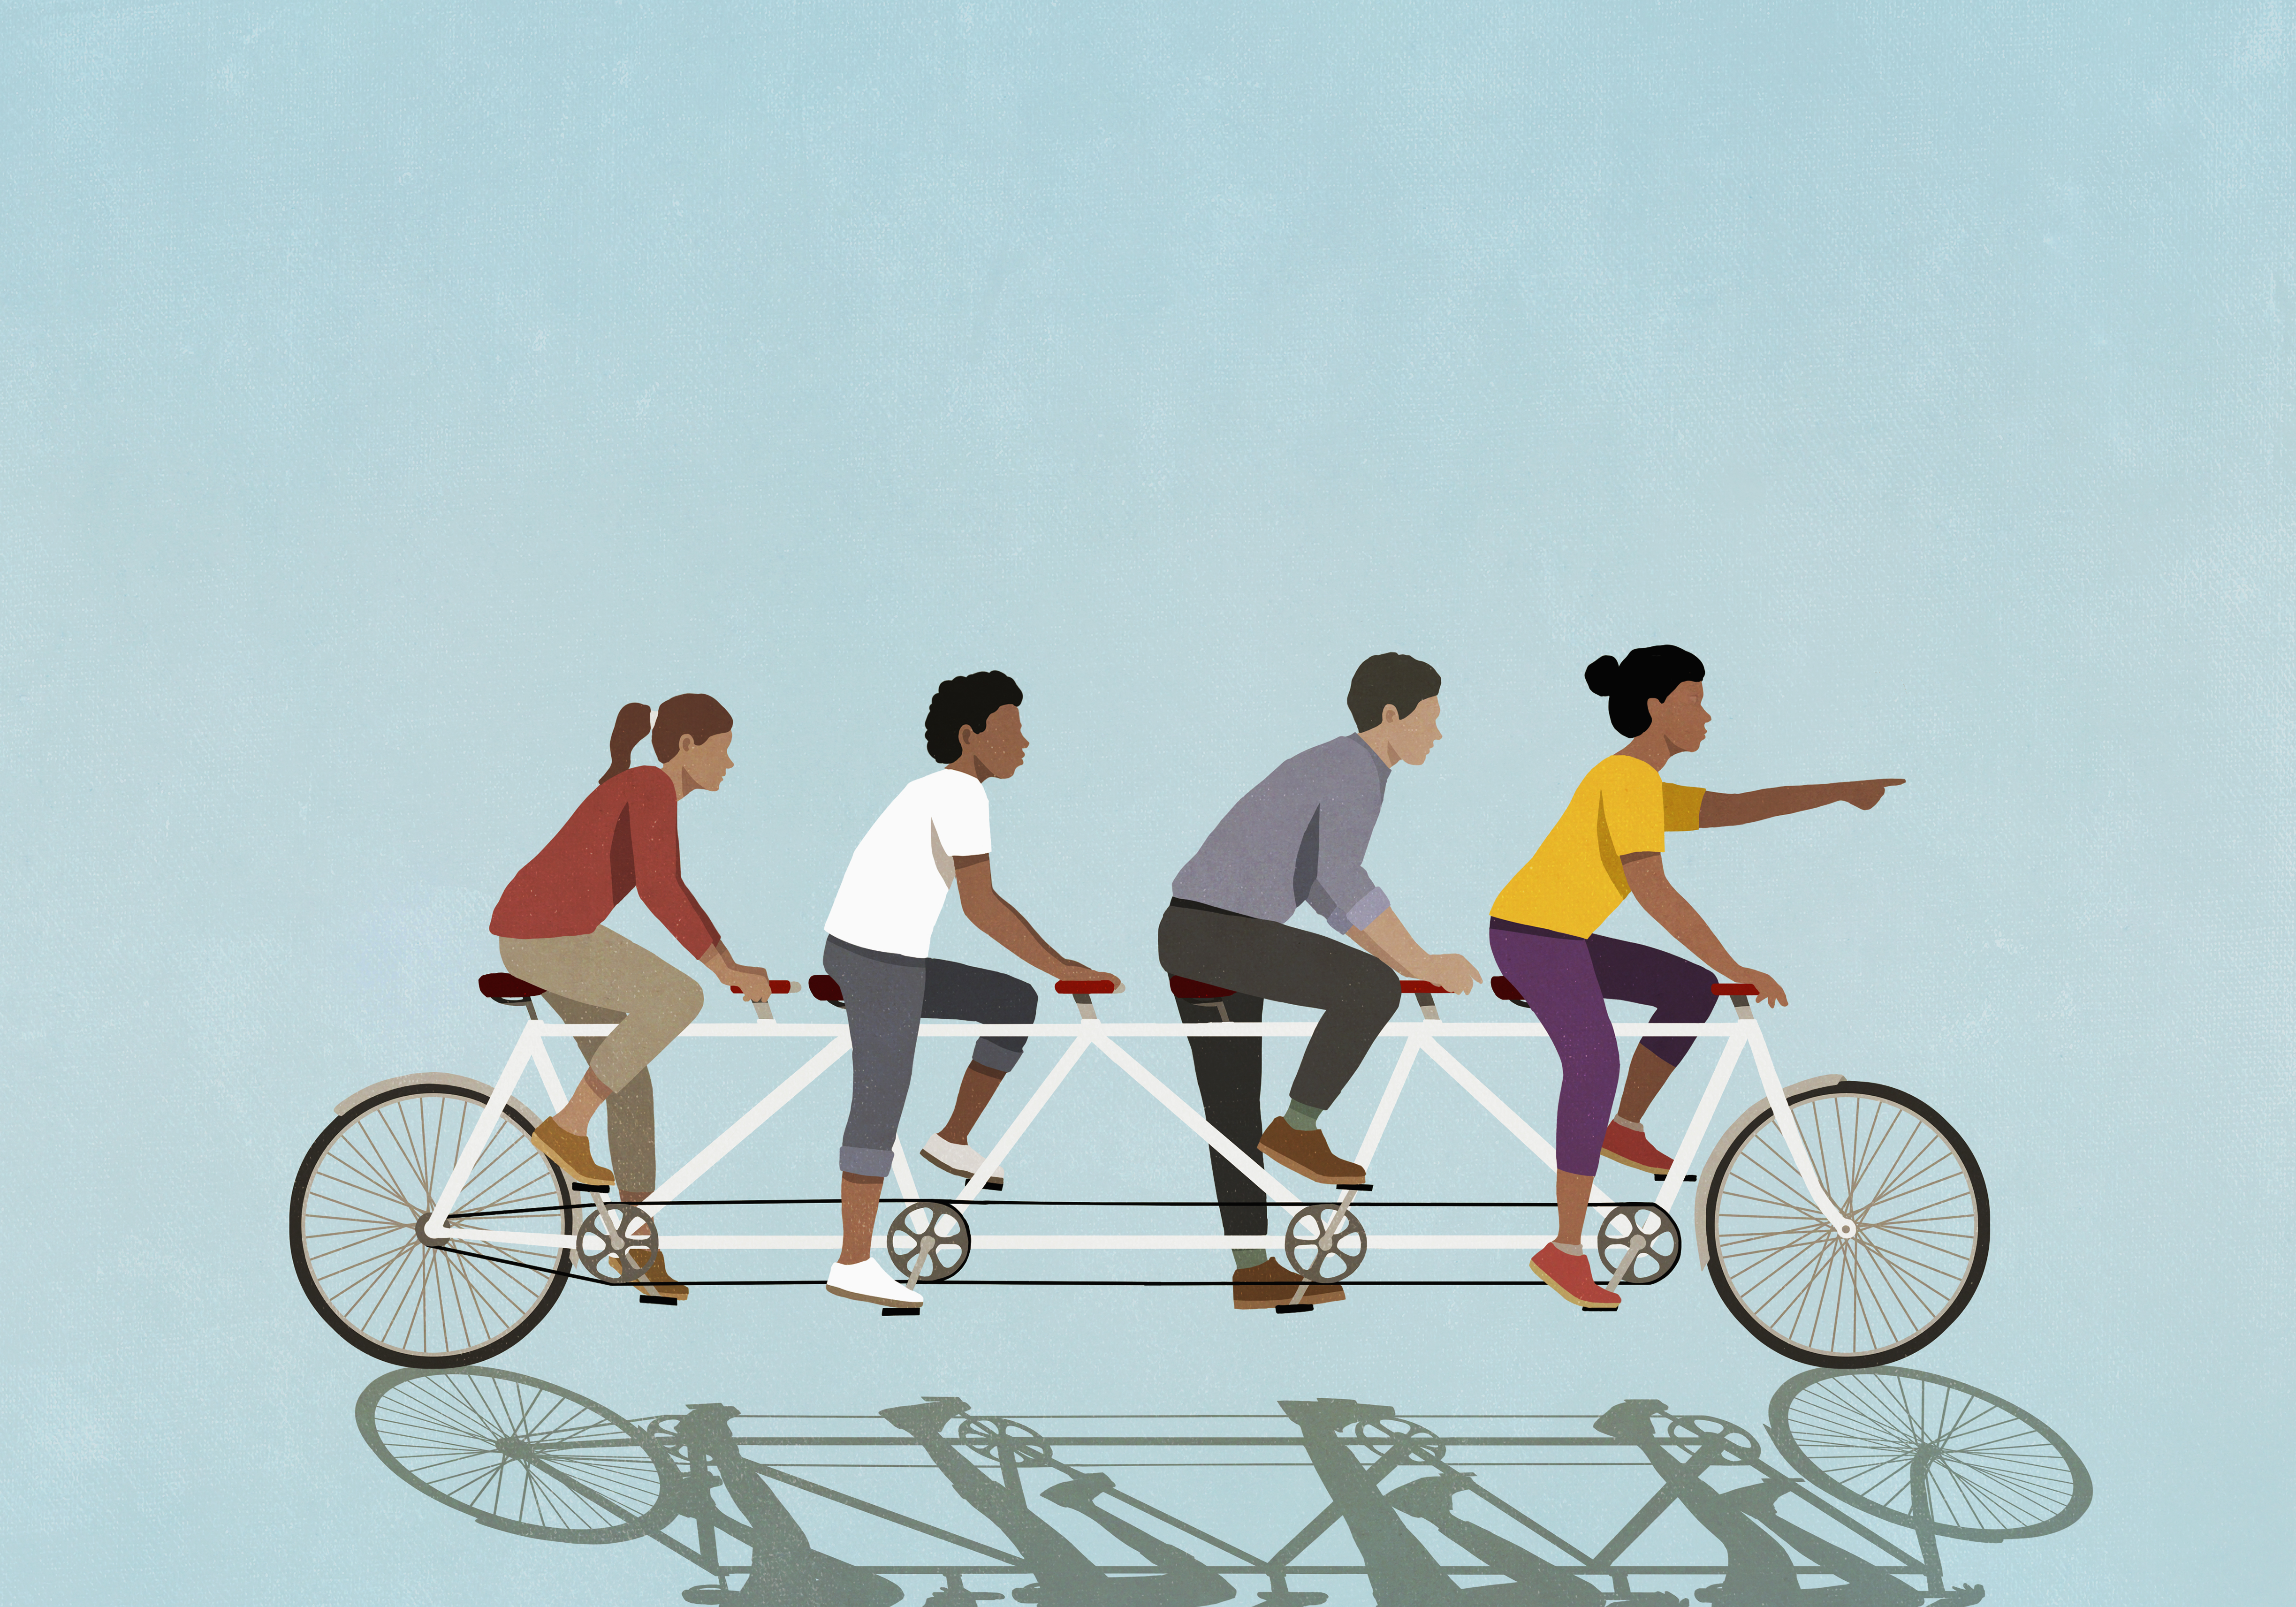 Ilustración de amigos montando una bicicleta tándem sobre fondo azul.